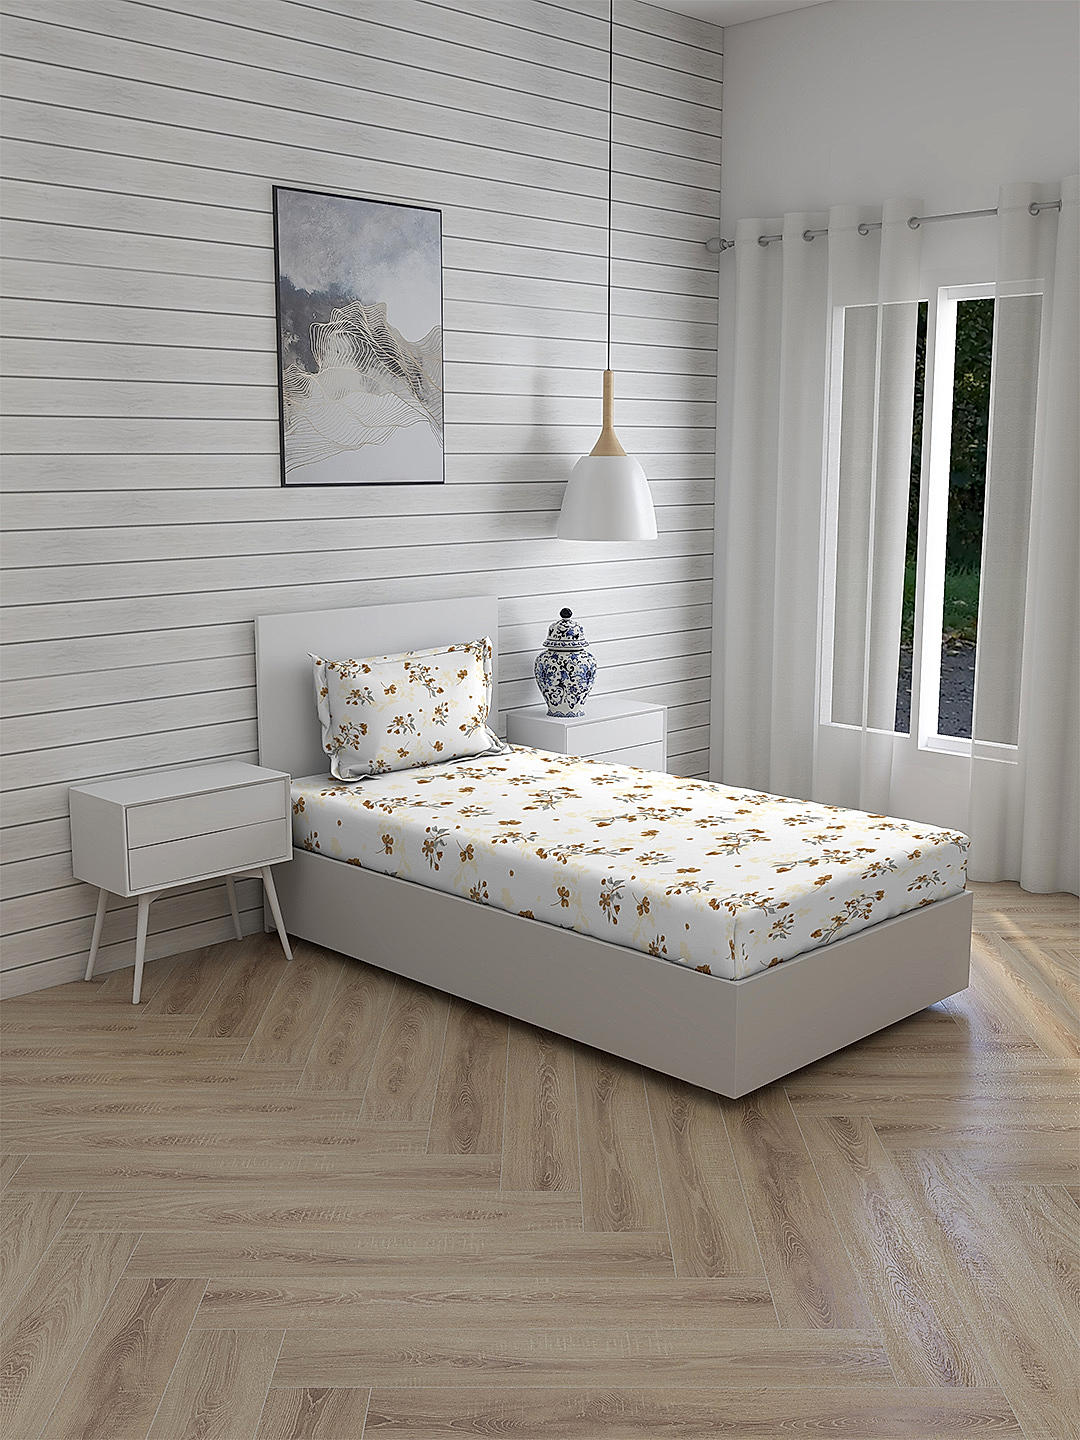 Iris Gaze-1 100% cotton Fine White/Brown Colored Floral Print Single Bed Sheet Set